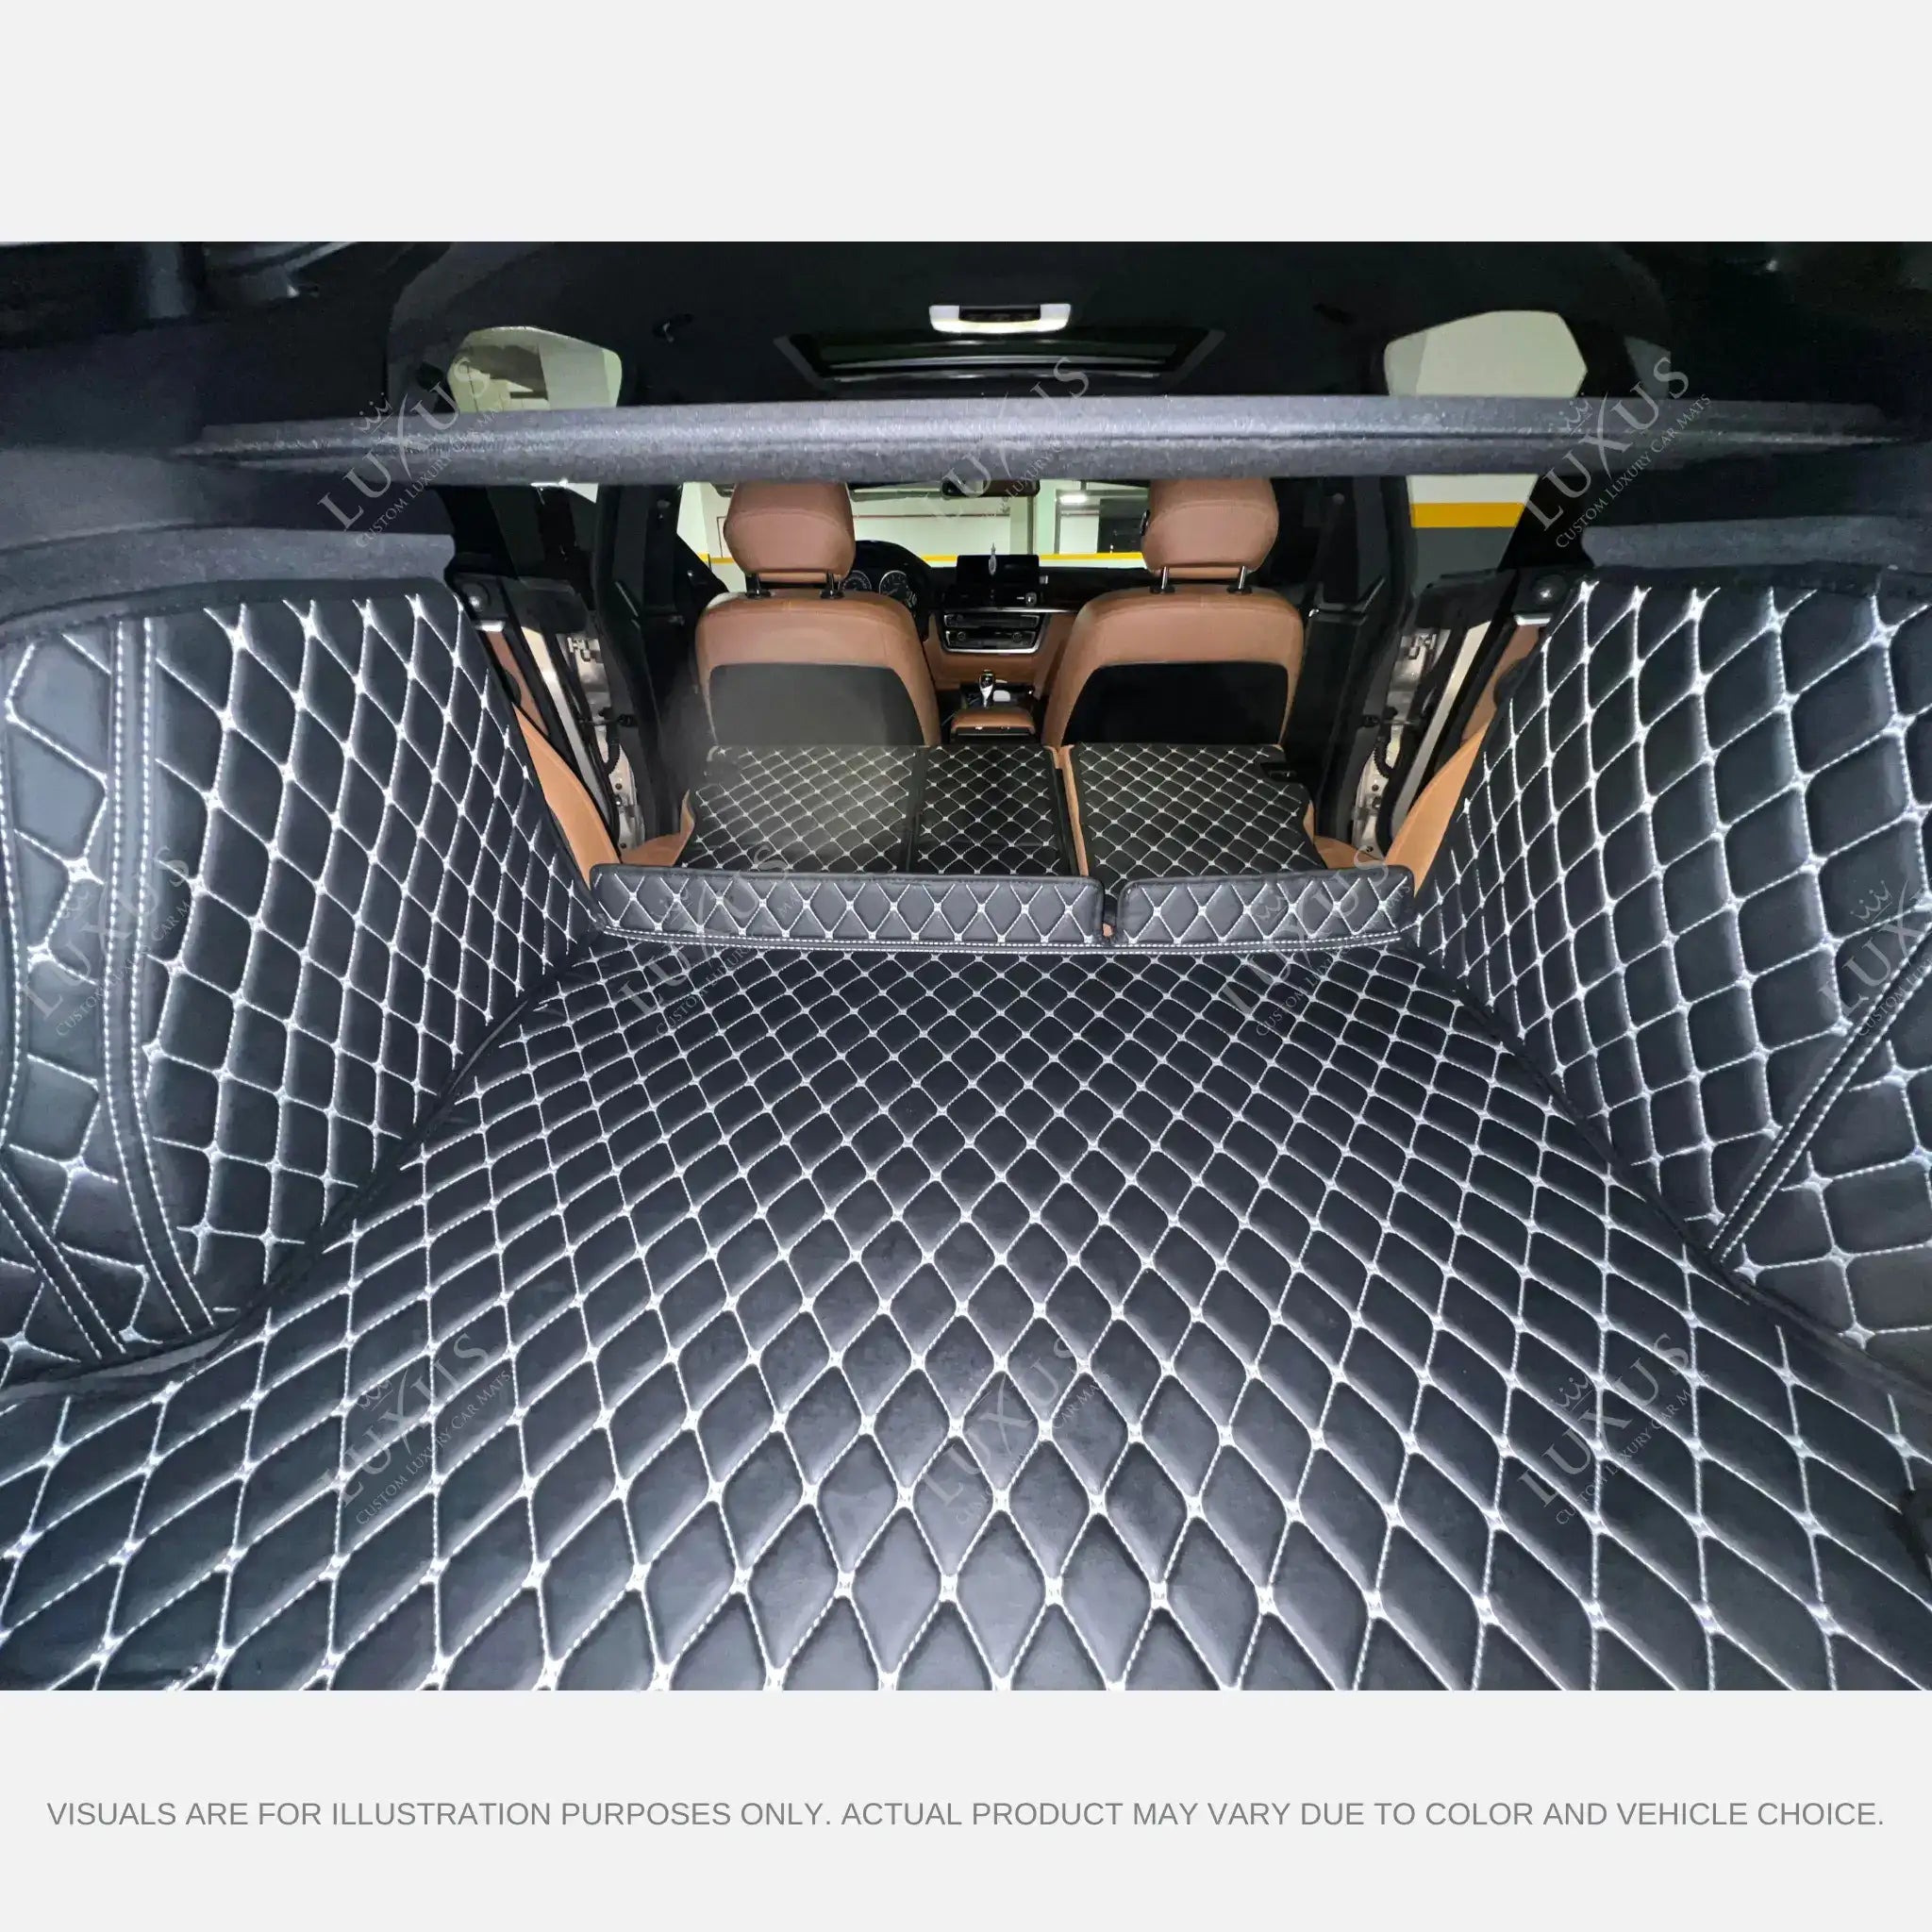 Luxus Car Mats™ - Tapete para maletero/maletero de cuero de lujo con costuras en 3D en negro y azul